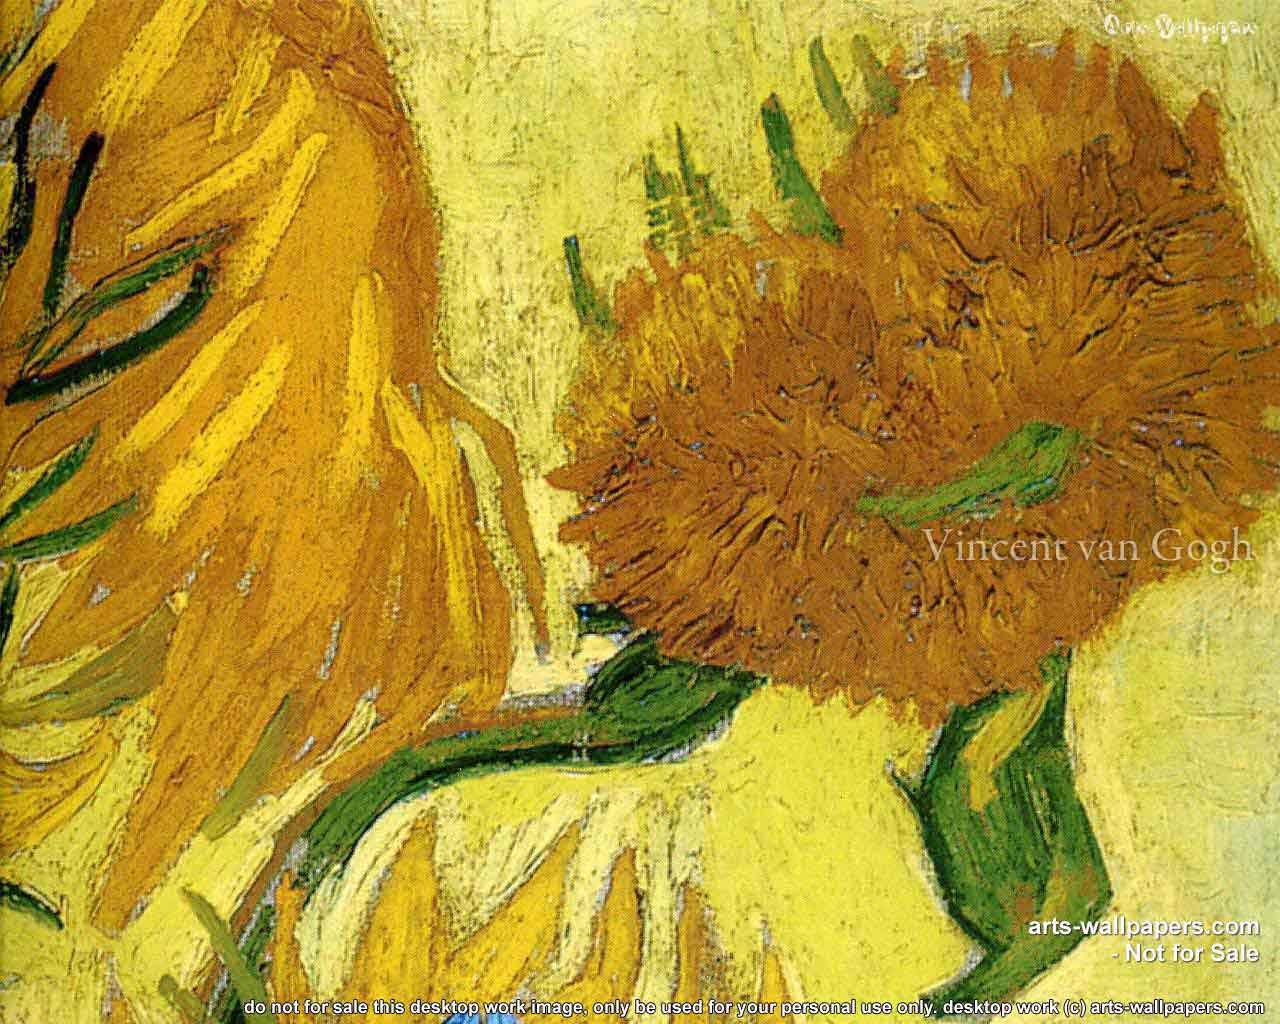 Art Wallpaper Vincent Van Gogh